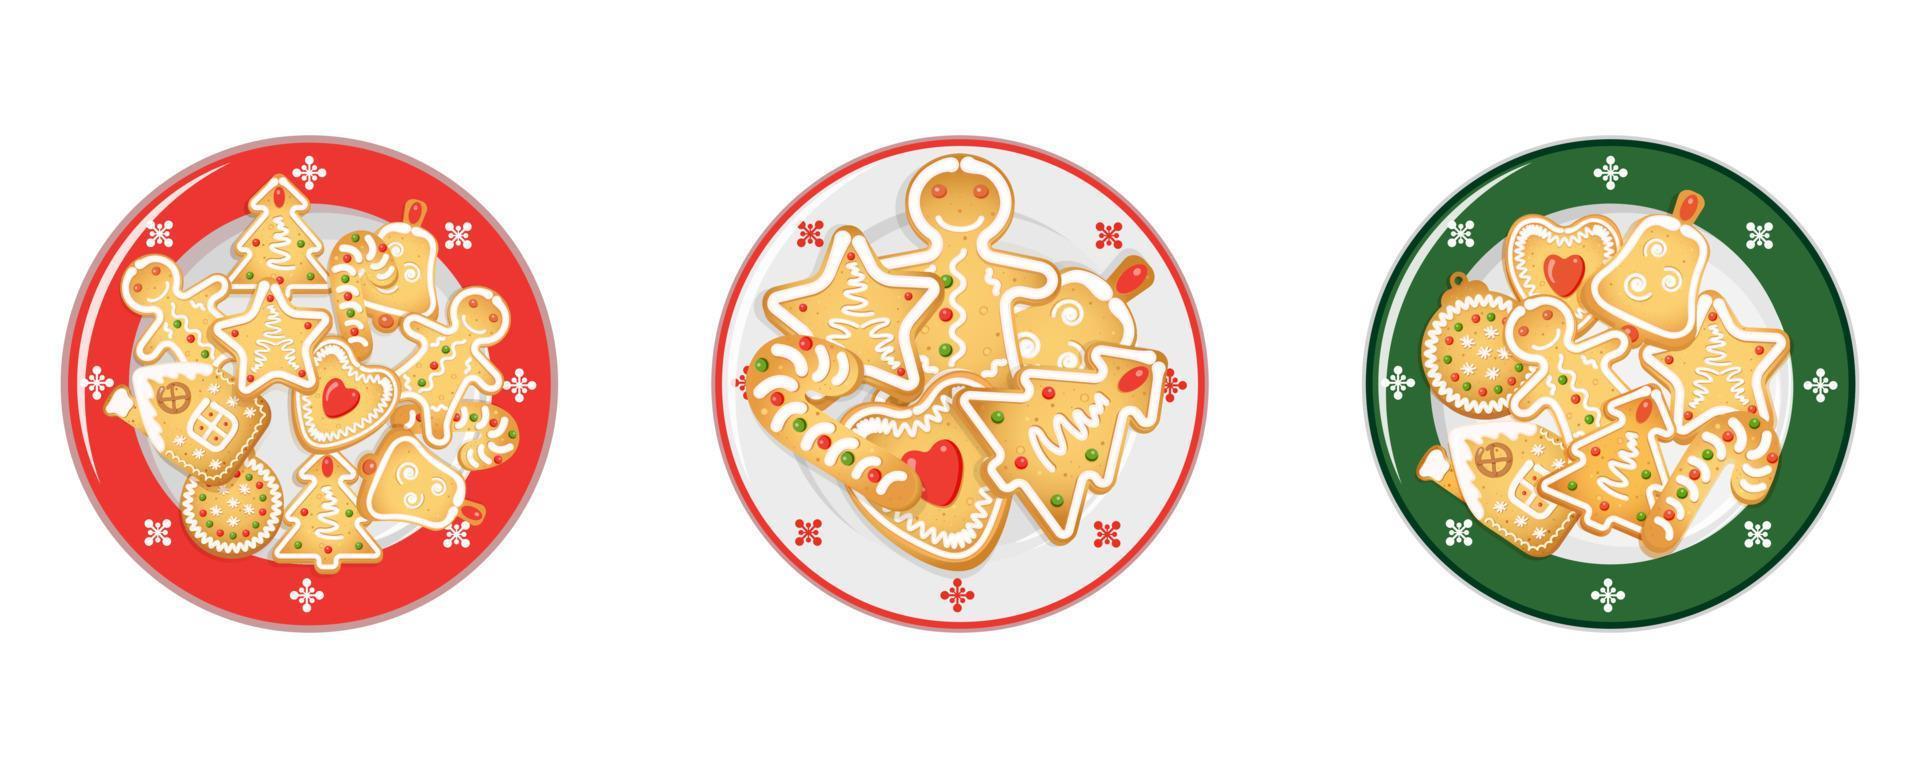 Galletas de jengibre navideñas en bandeja de porcelana. vista desde arriba. ilustración vectorial de la mesa festiva de año nuevo. vector